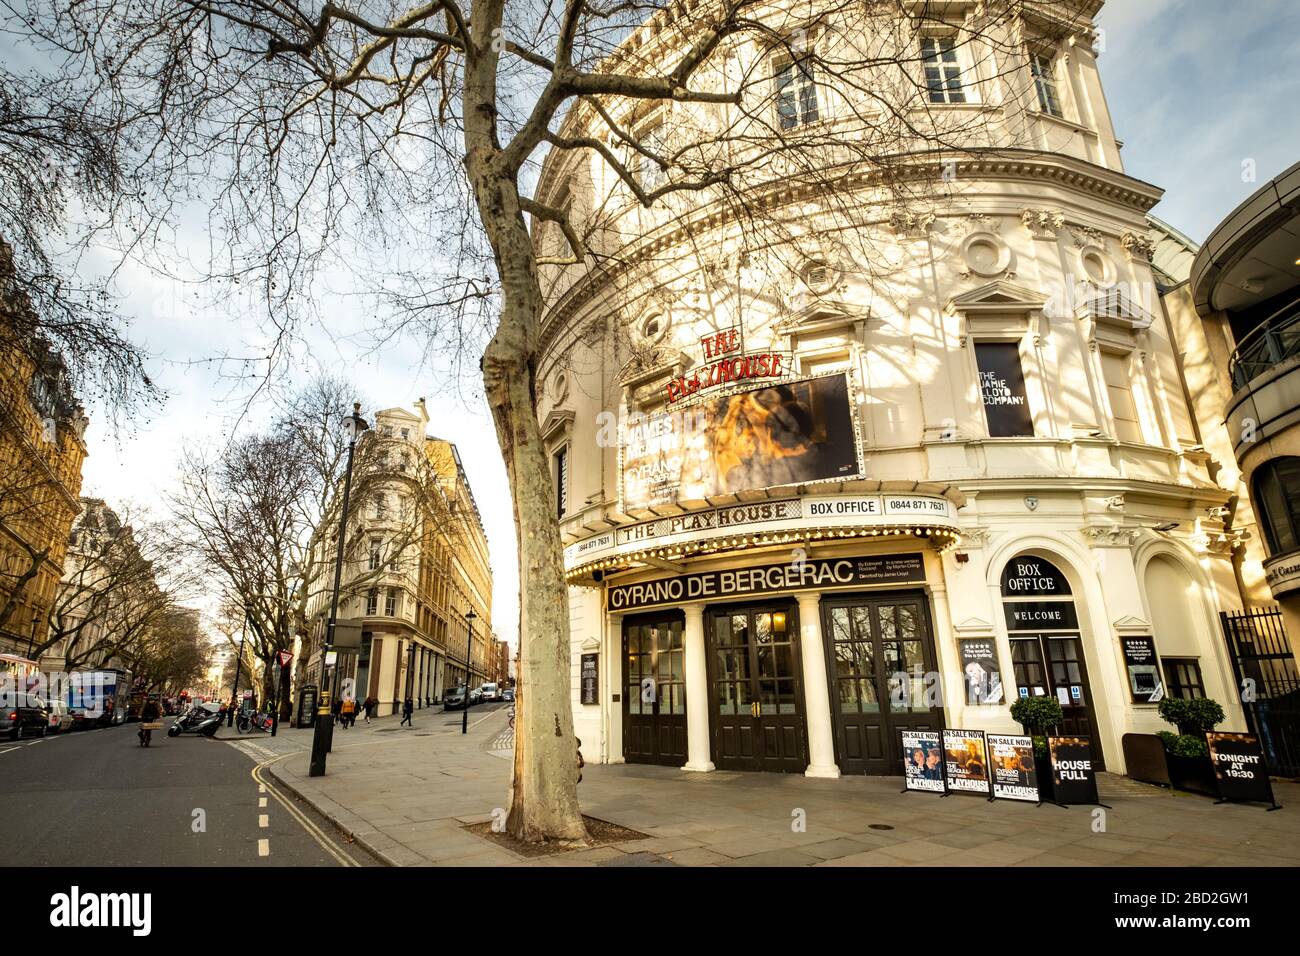 LONDRA - MARZO 2019: Playhouse Theatre vicino a Trafalgar Square nel West End di Londra. Attualmente mostra il Cyrano de Bergerac con James McAvoy Foto Stock